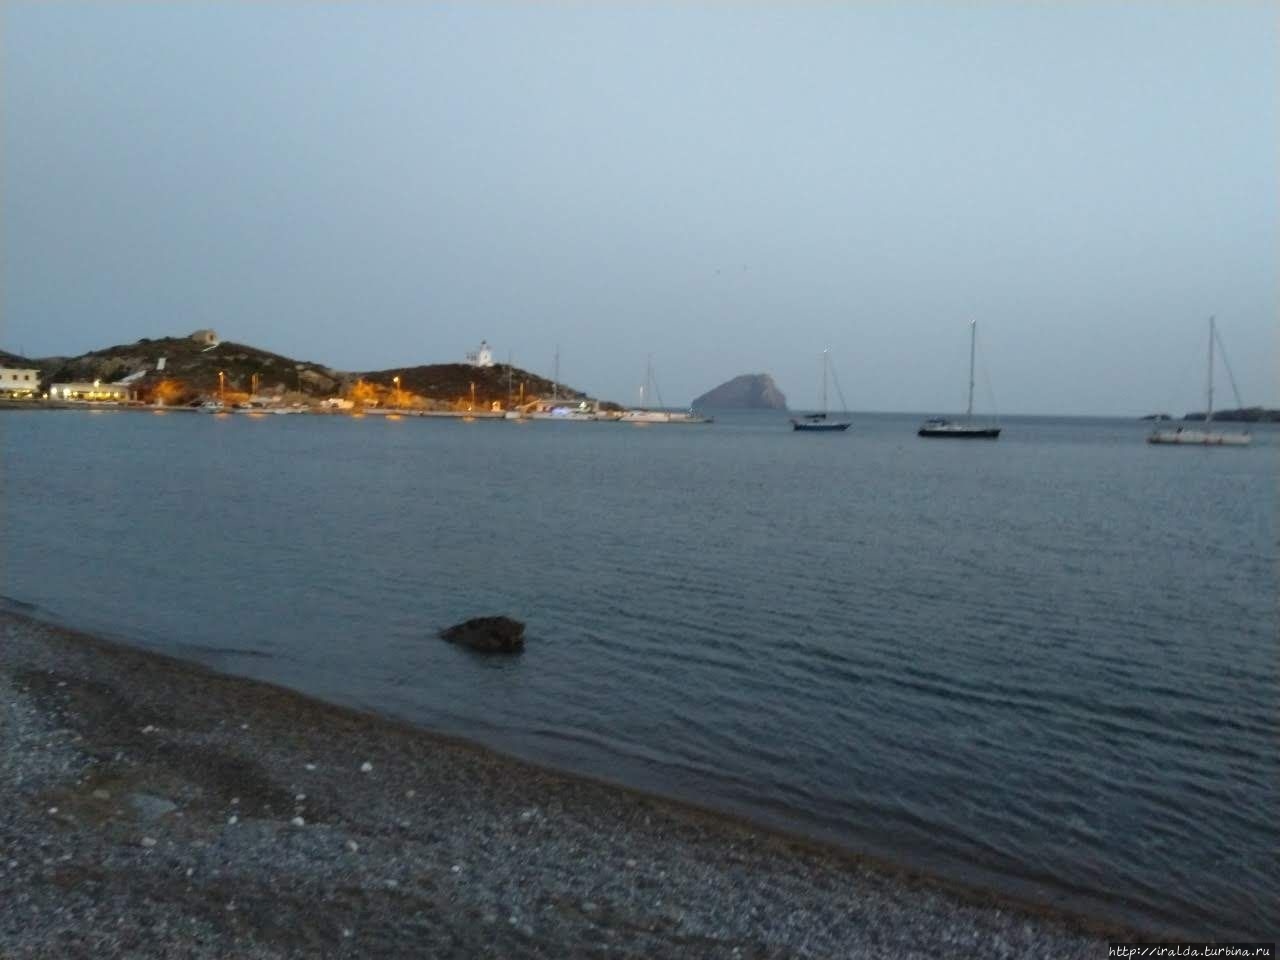 Хора (Китира) Остров Китира, Греция